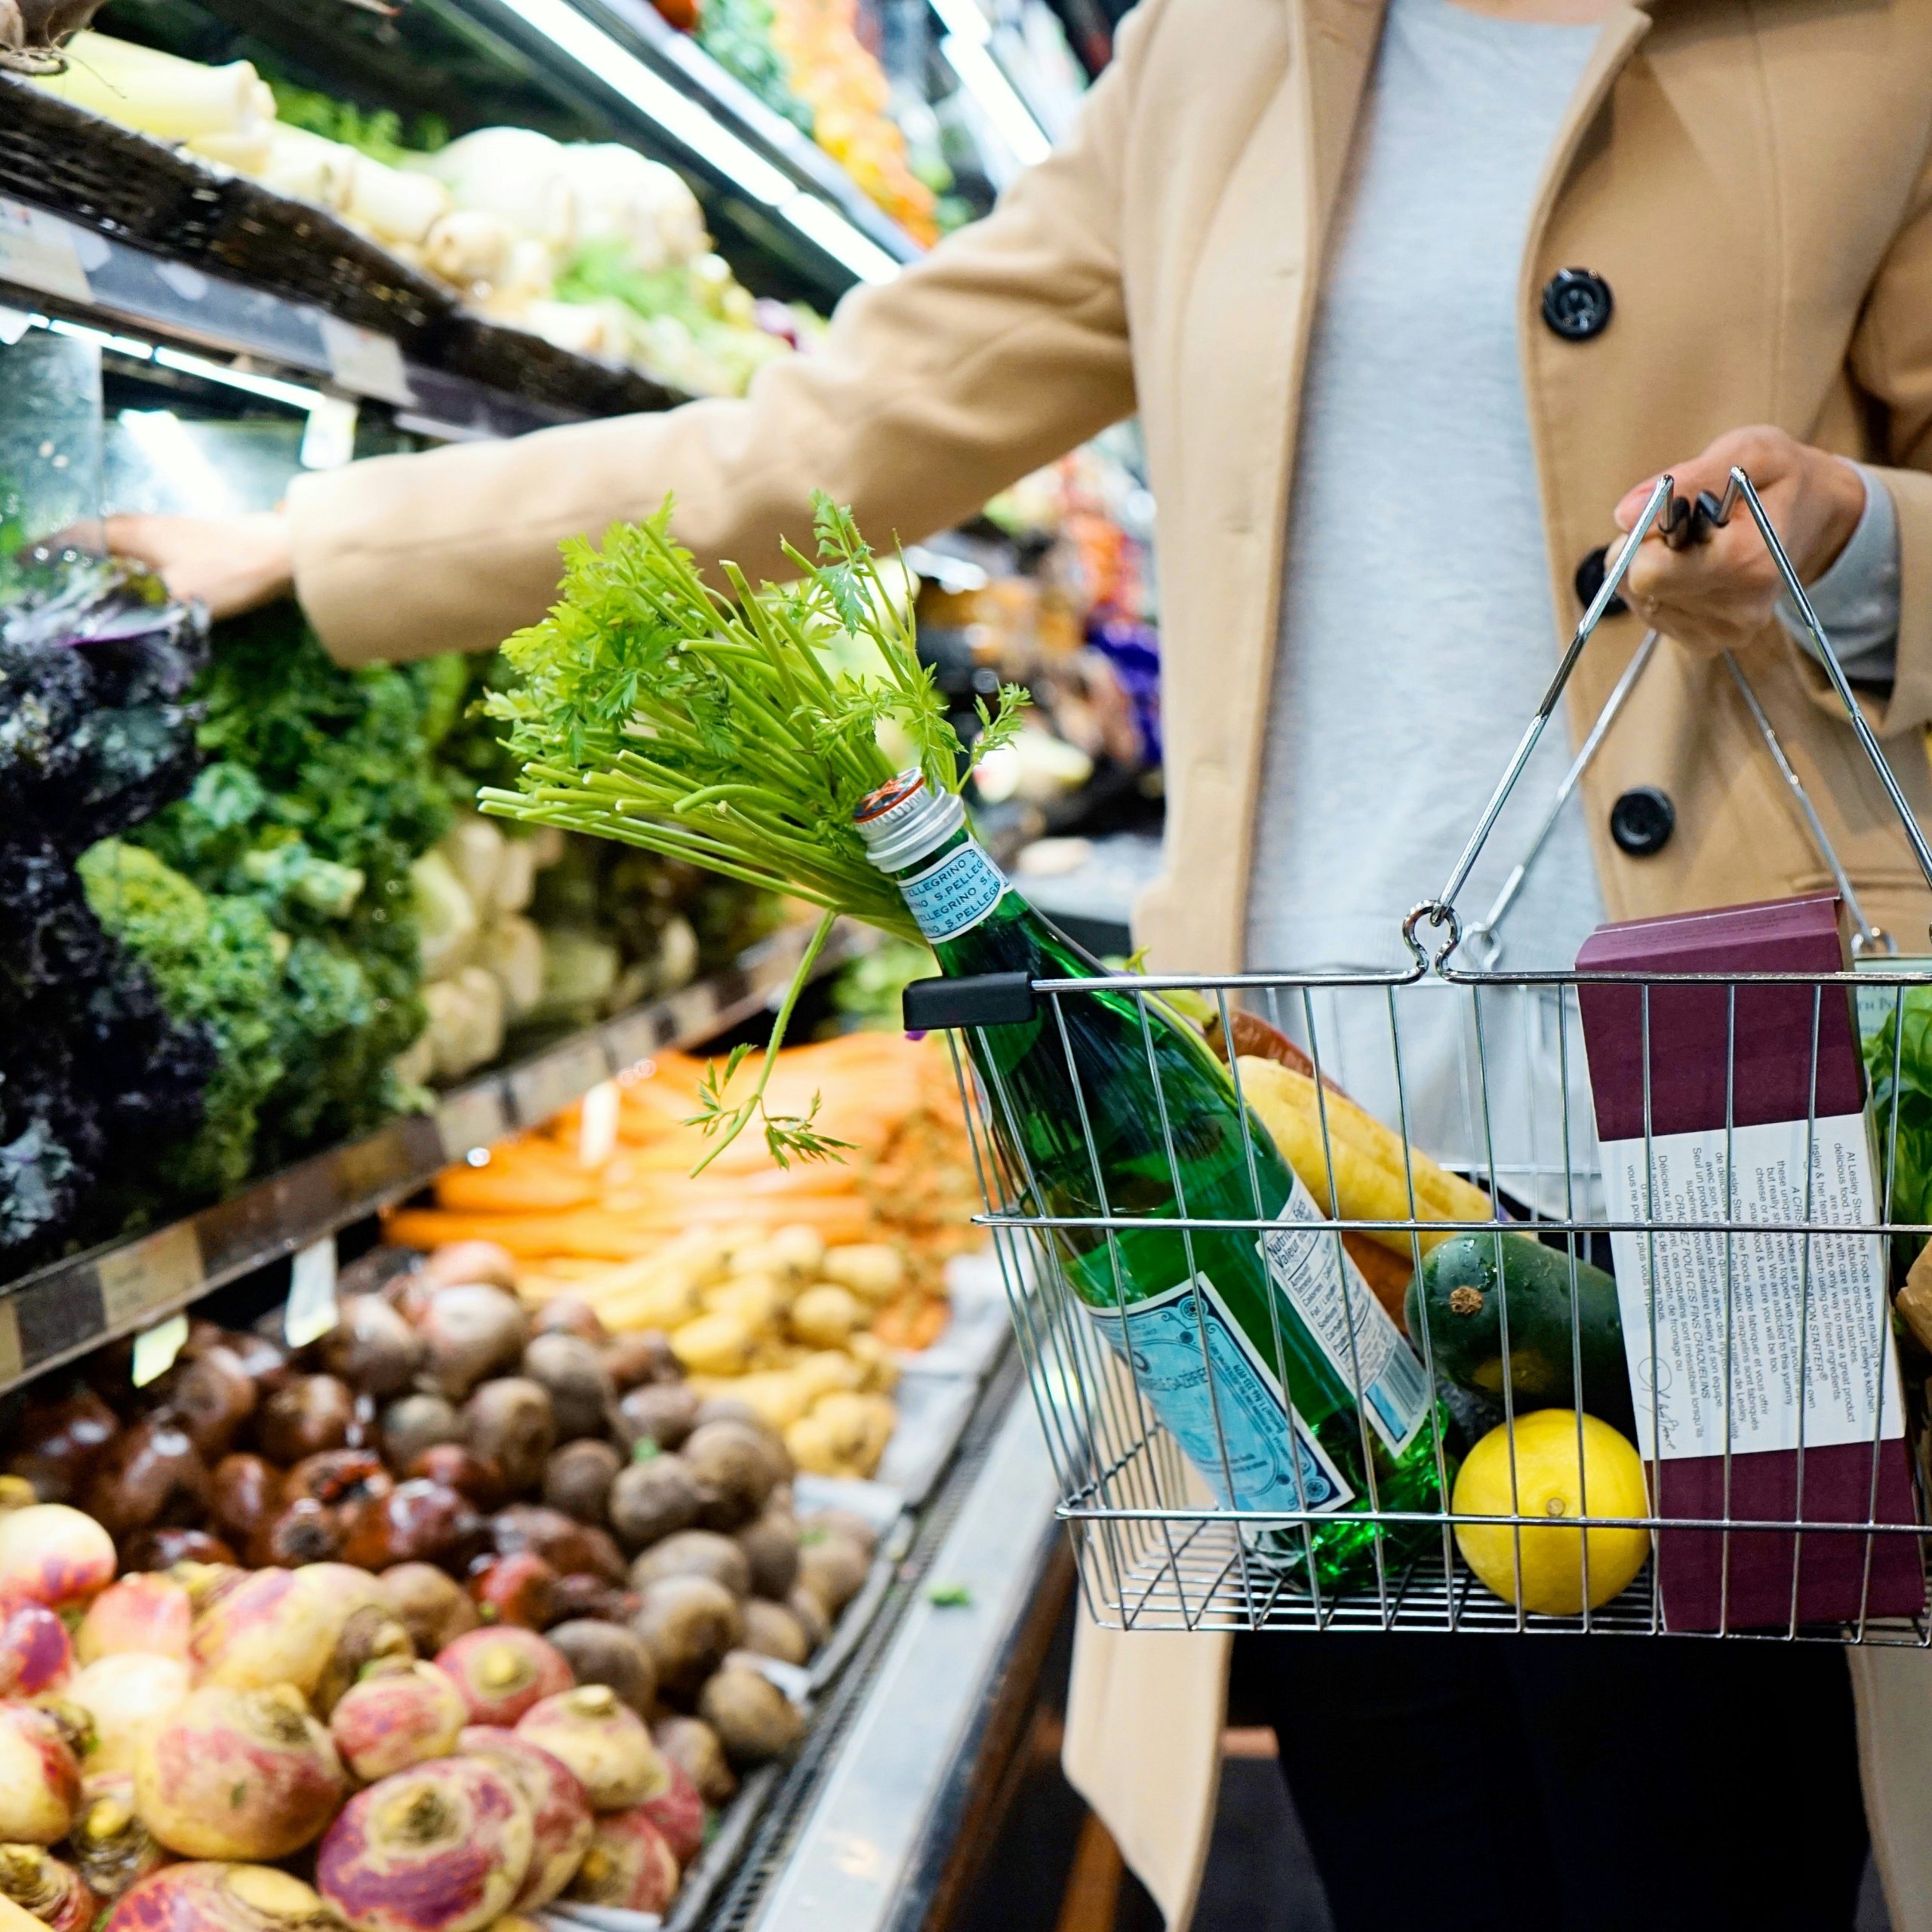 Versterking voor de voedselhulp: de Brusselse supermarkten zullen hun onverkochte voeding moeten doneren